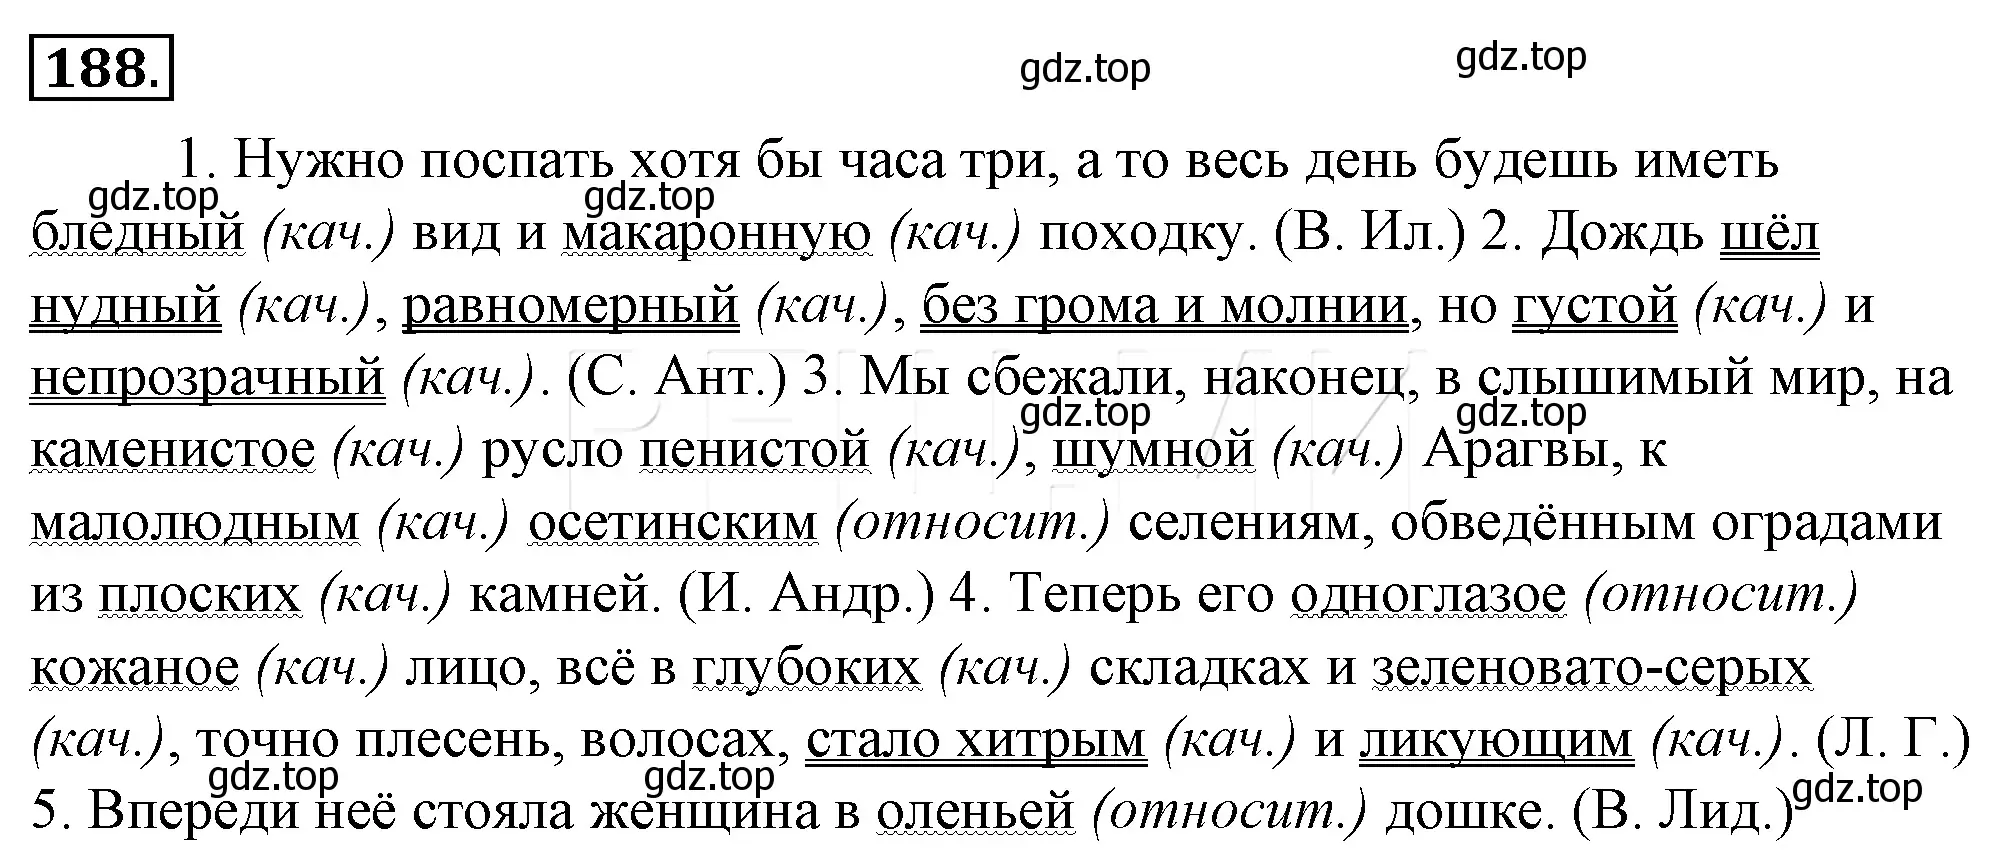 Решение 4. номер 212 (страница 201) гдз по русскому языку 10-11 класс Гольцова, Шамшин, учебник 1 часть